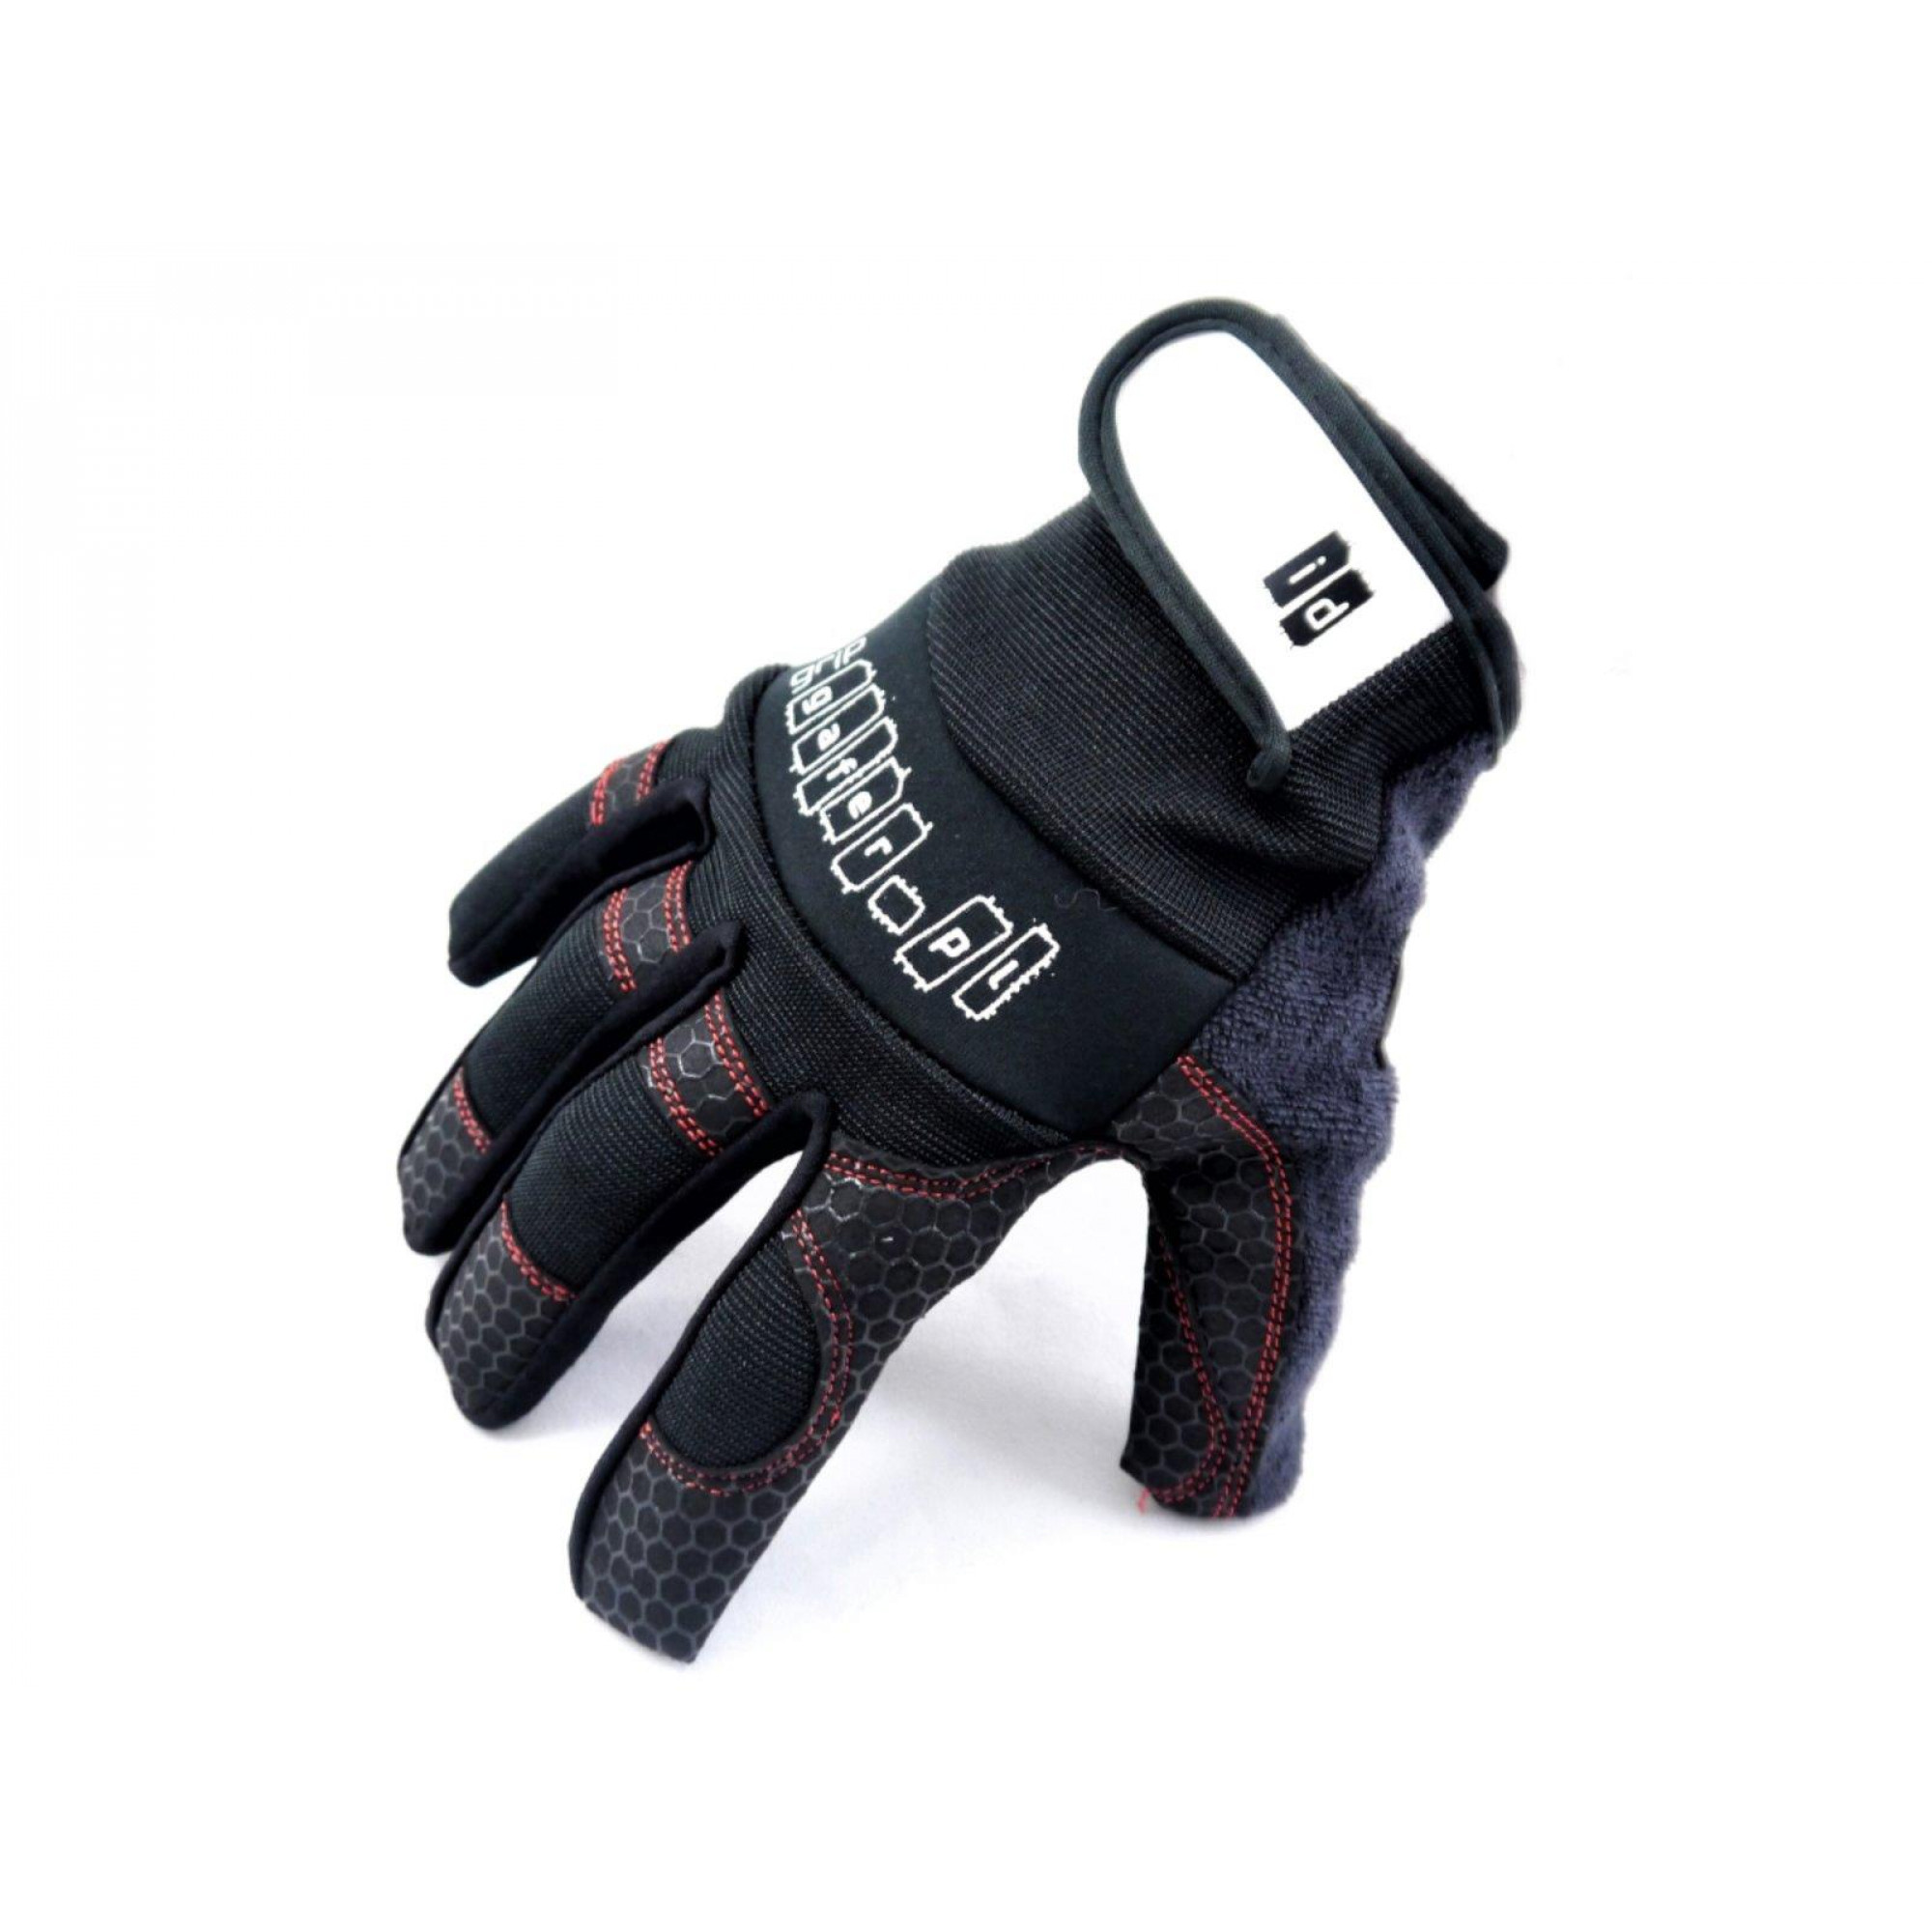 GAFER Grip glove XL